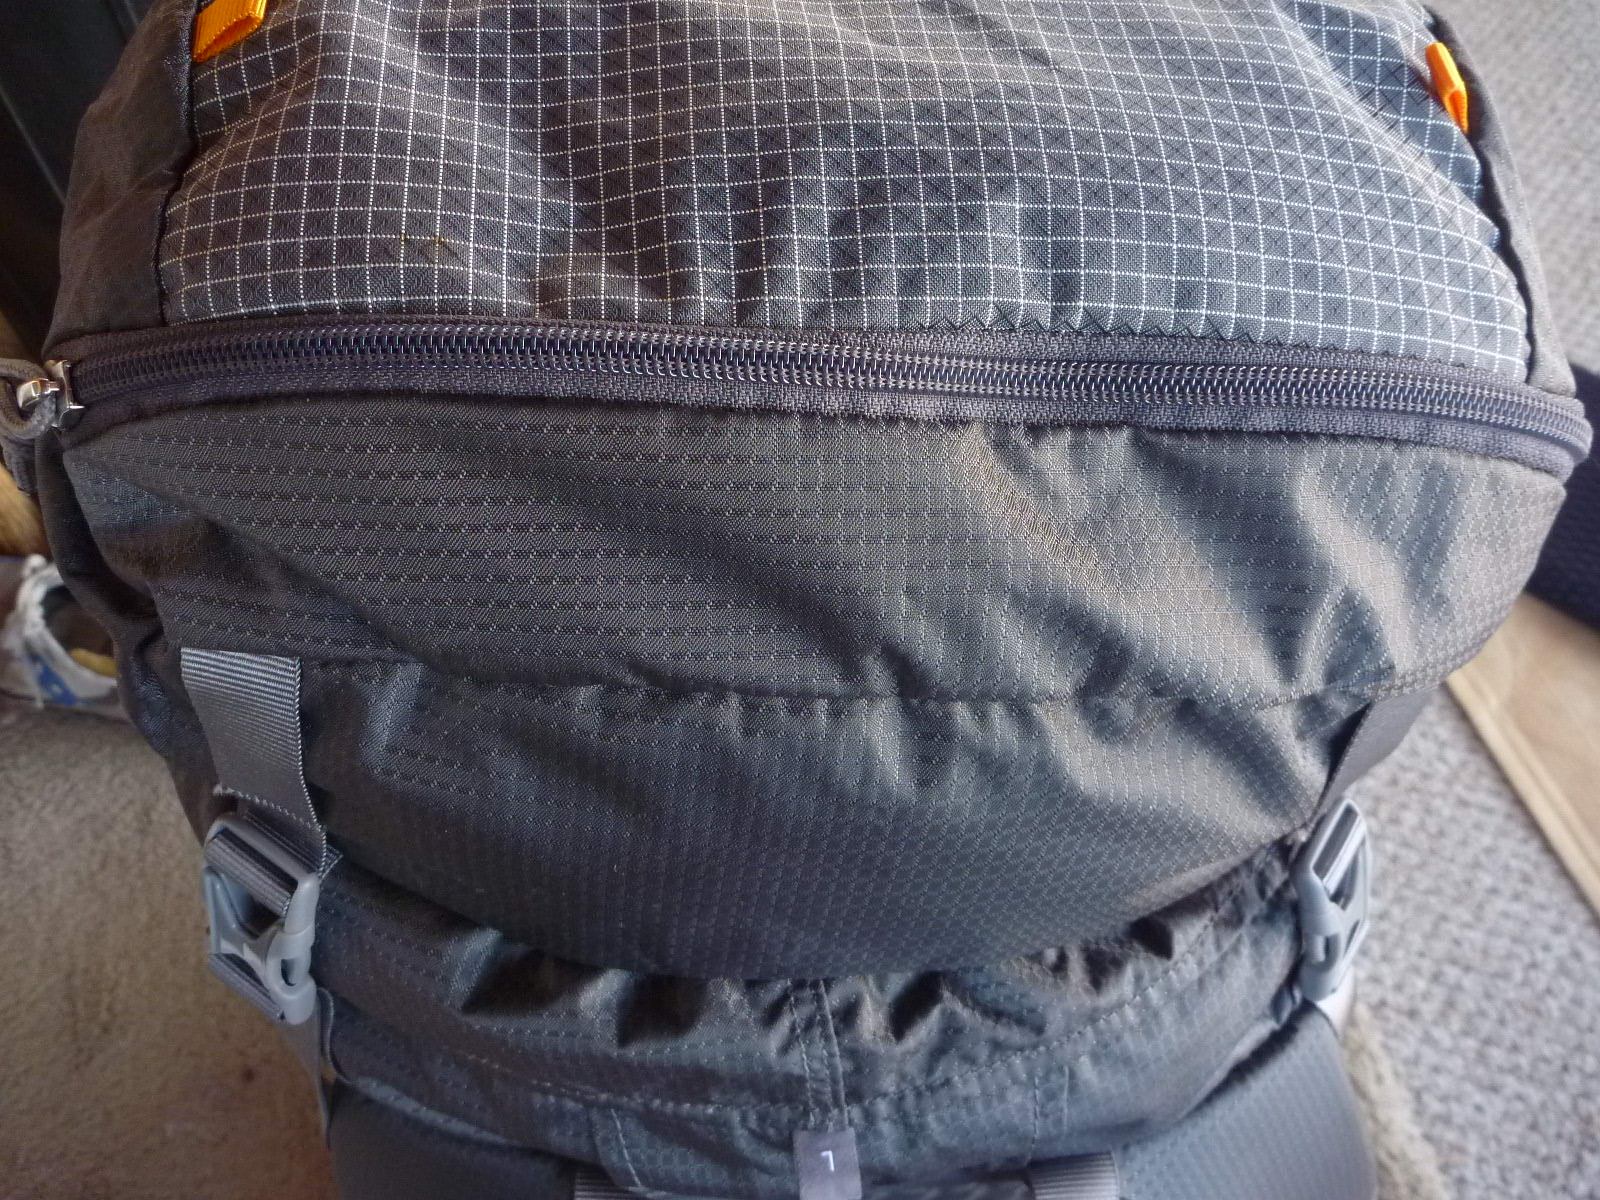 Gossamer Gear Silverback 50 Internal Frame Backpack, Size Large ...